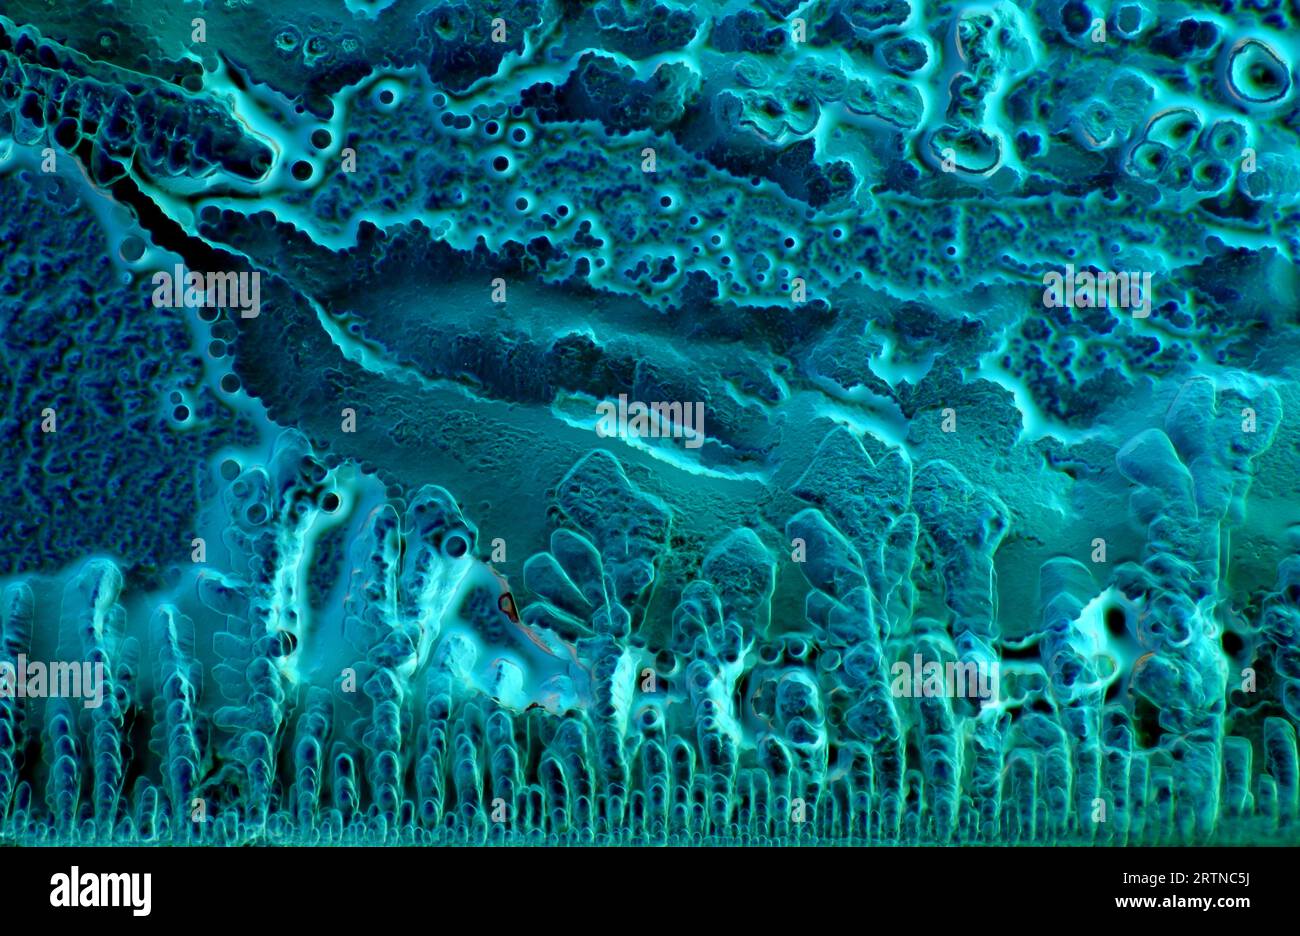 L'immagine presenta la salsa di soia cristallizzata, fotografata attraverso il microscopio a luce polarizzata con un ingrandimento di 100X. Foto Stock